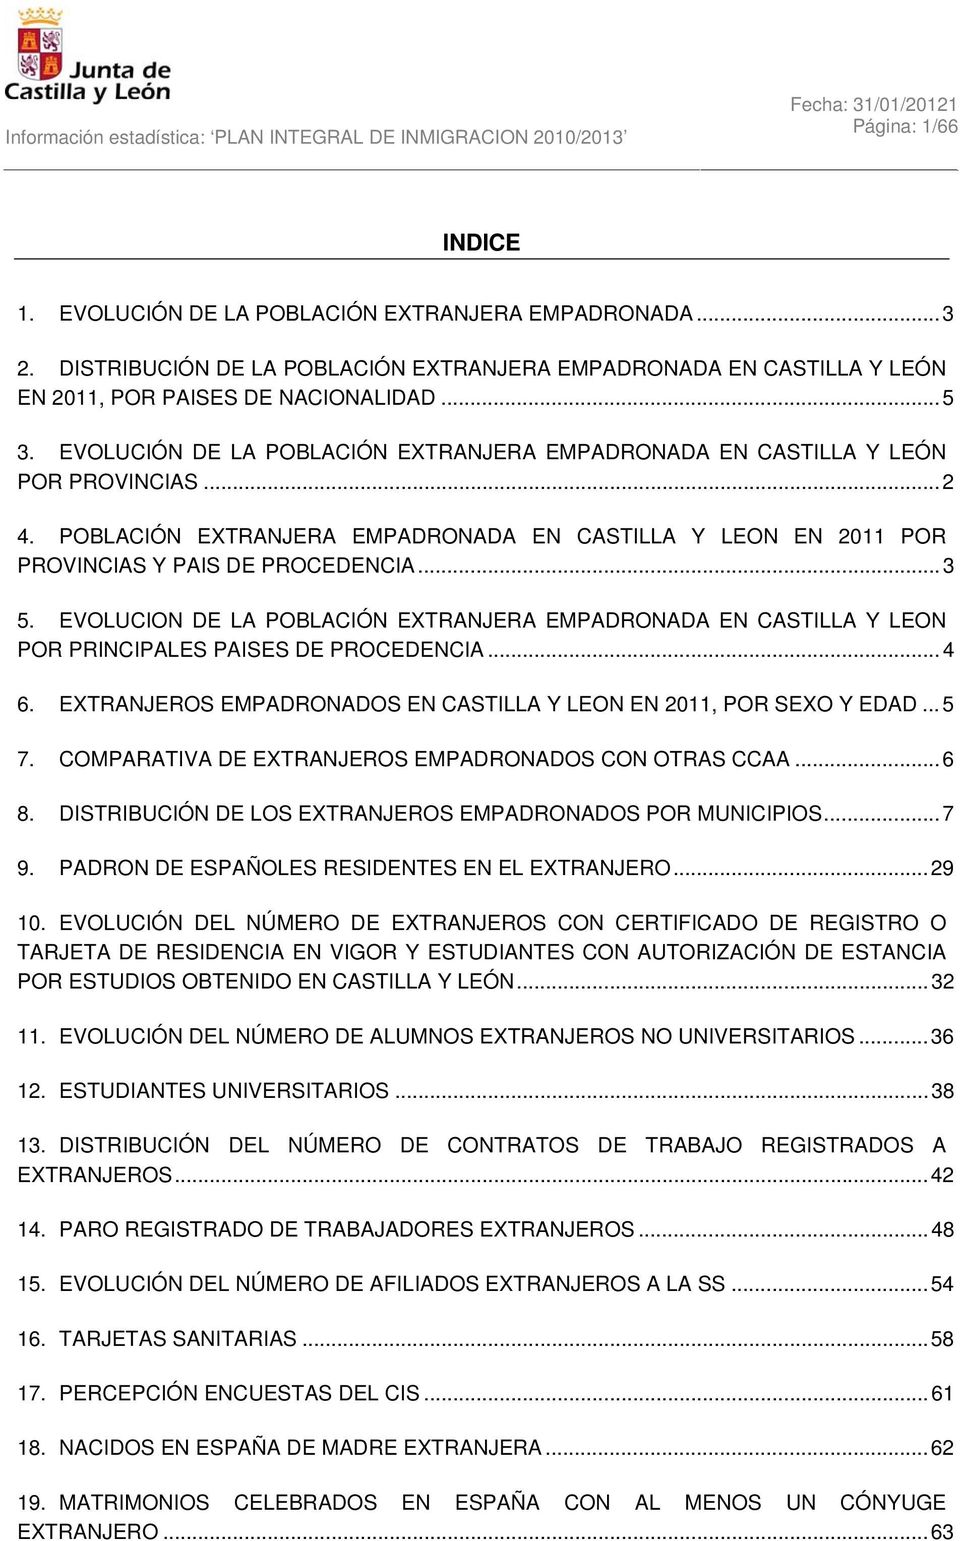 EVOLUCION DE LA POBLACIÓN EXTRANJERA EMPADRONADA EN CASTILLA Y LEON POR PRINCIPALES PAISES DE PROCEDENCIA...4 6. EXTRANJEROS EMPADRONADOS EN CASTILLA Y LEON EN 2011, POR SEXO Y EDAD...5 7.